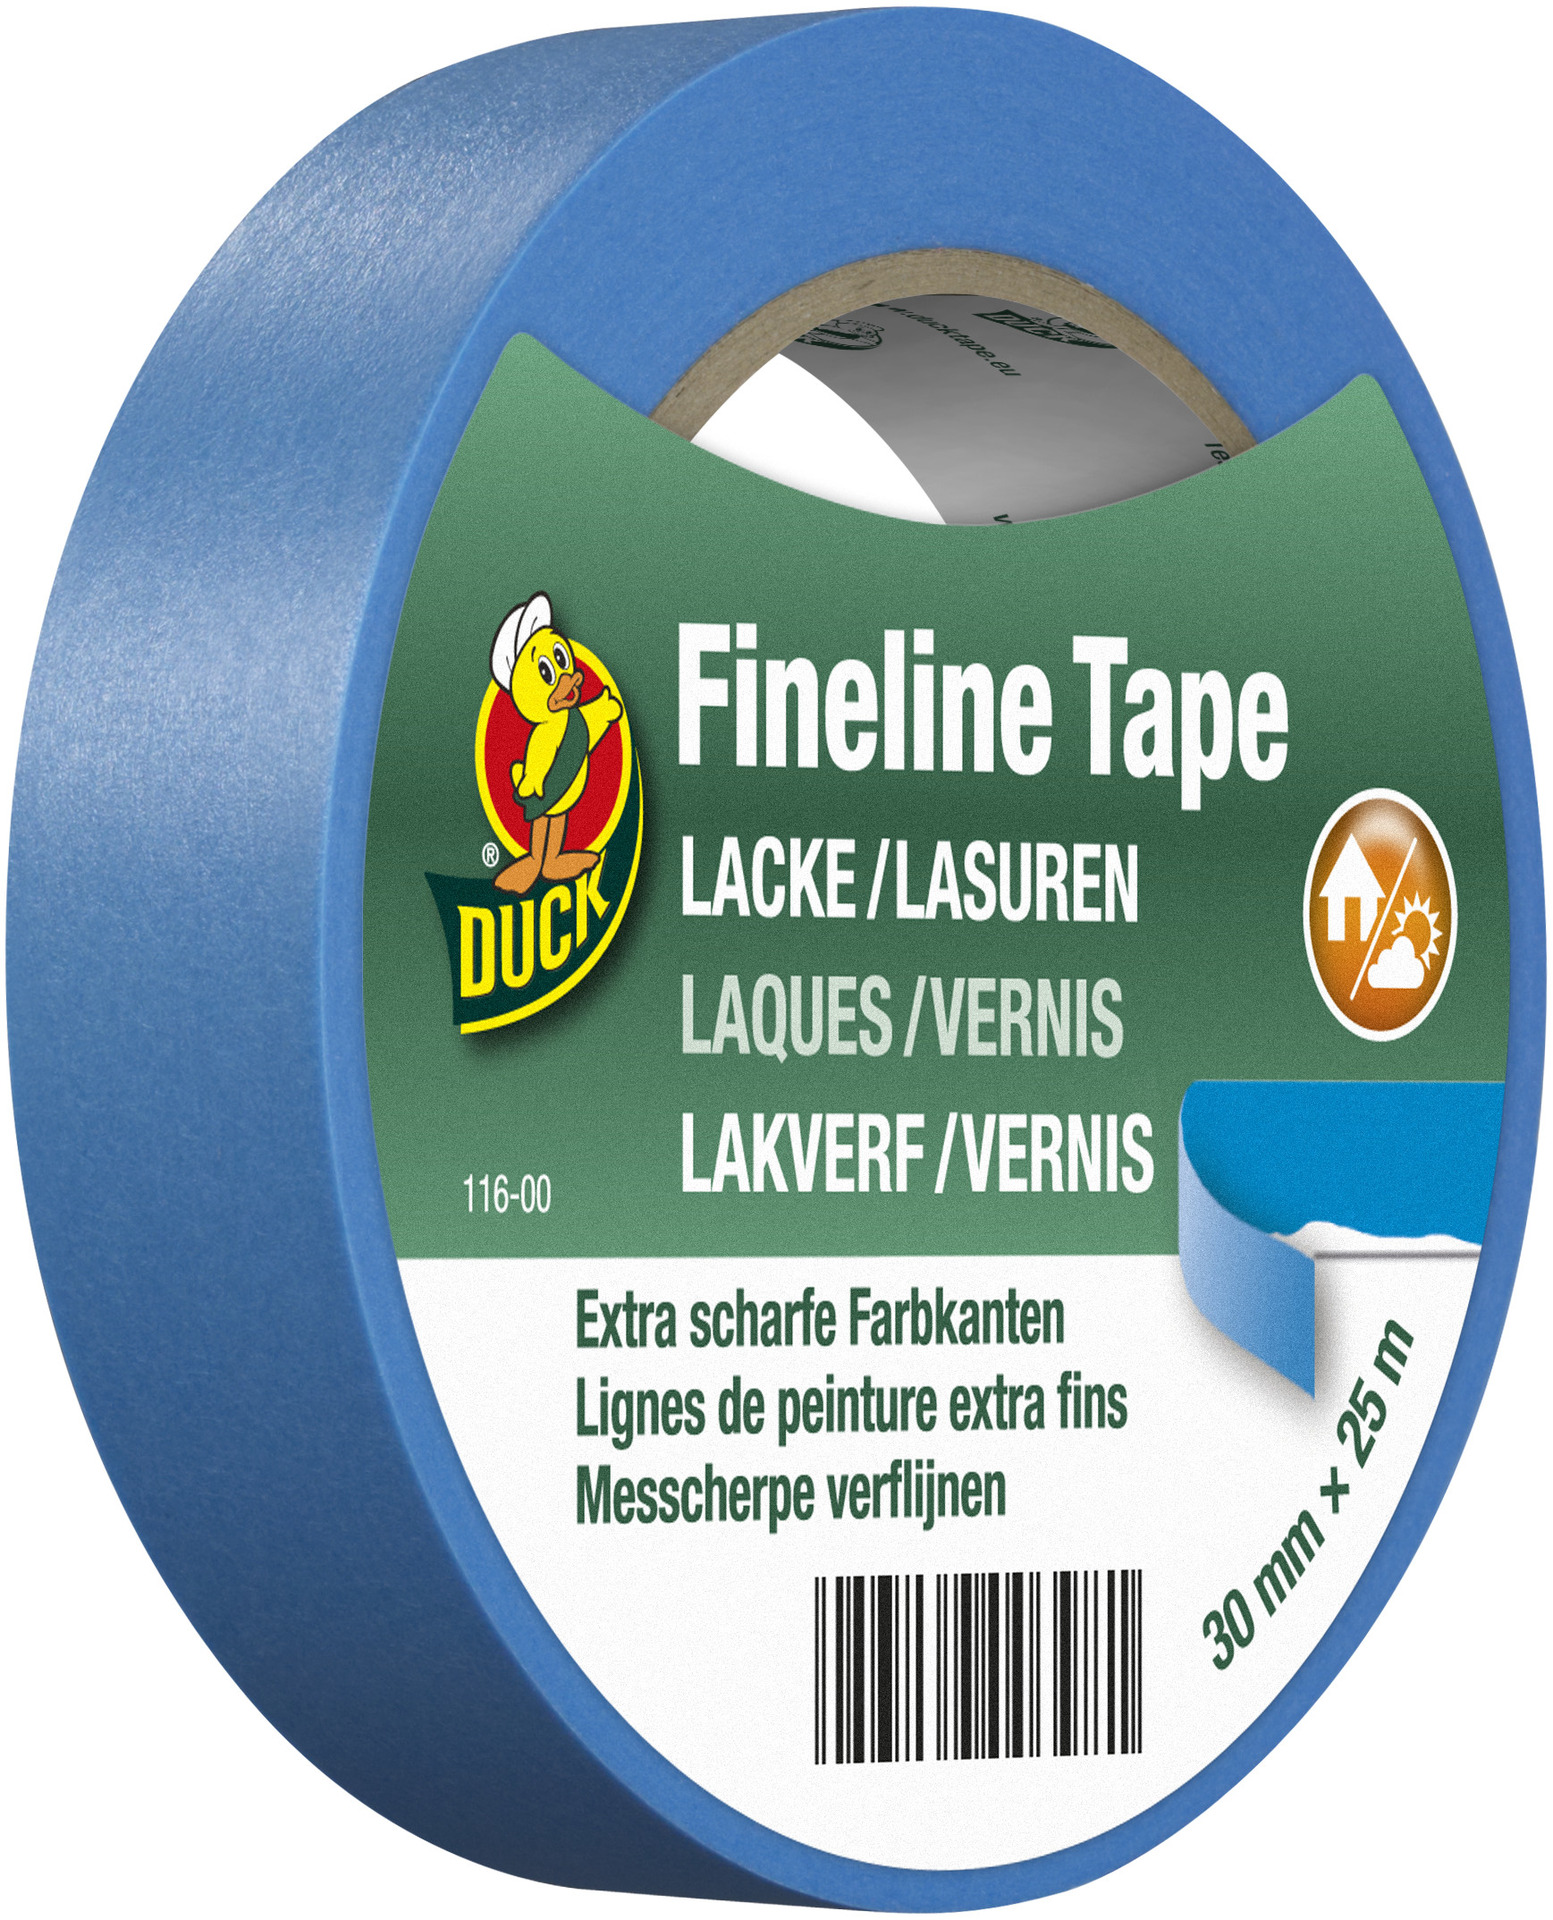 Kip Fineline Tape Lacke / Lasuren